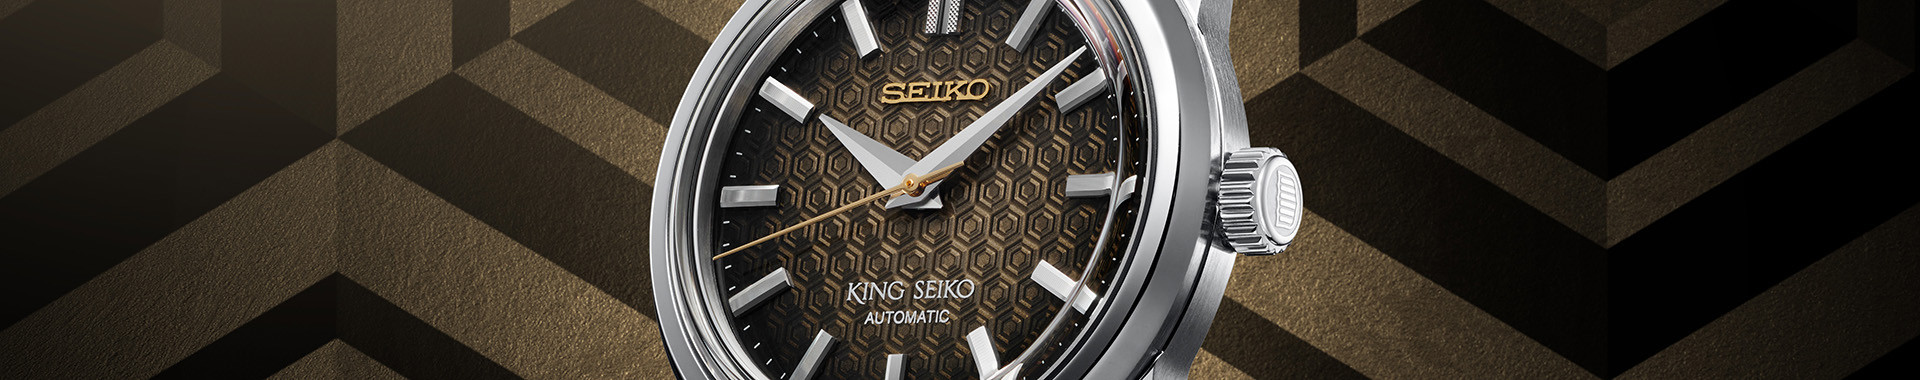 King Seiko Herrenuhr online kaufen | Seiko Boutique